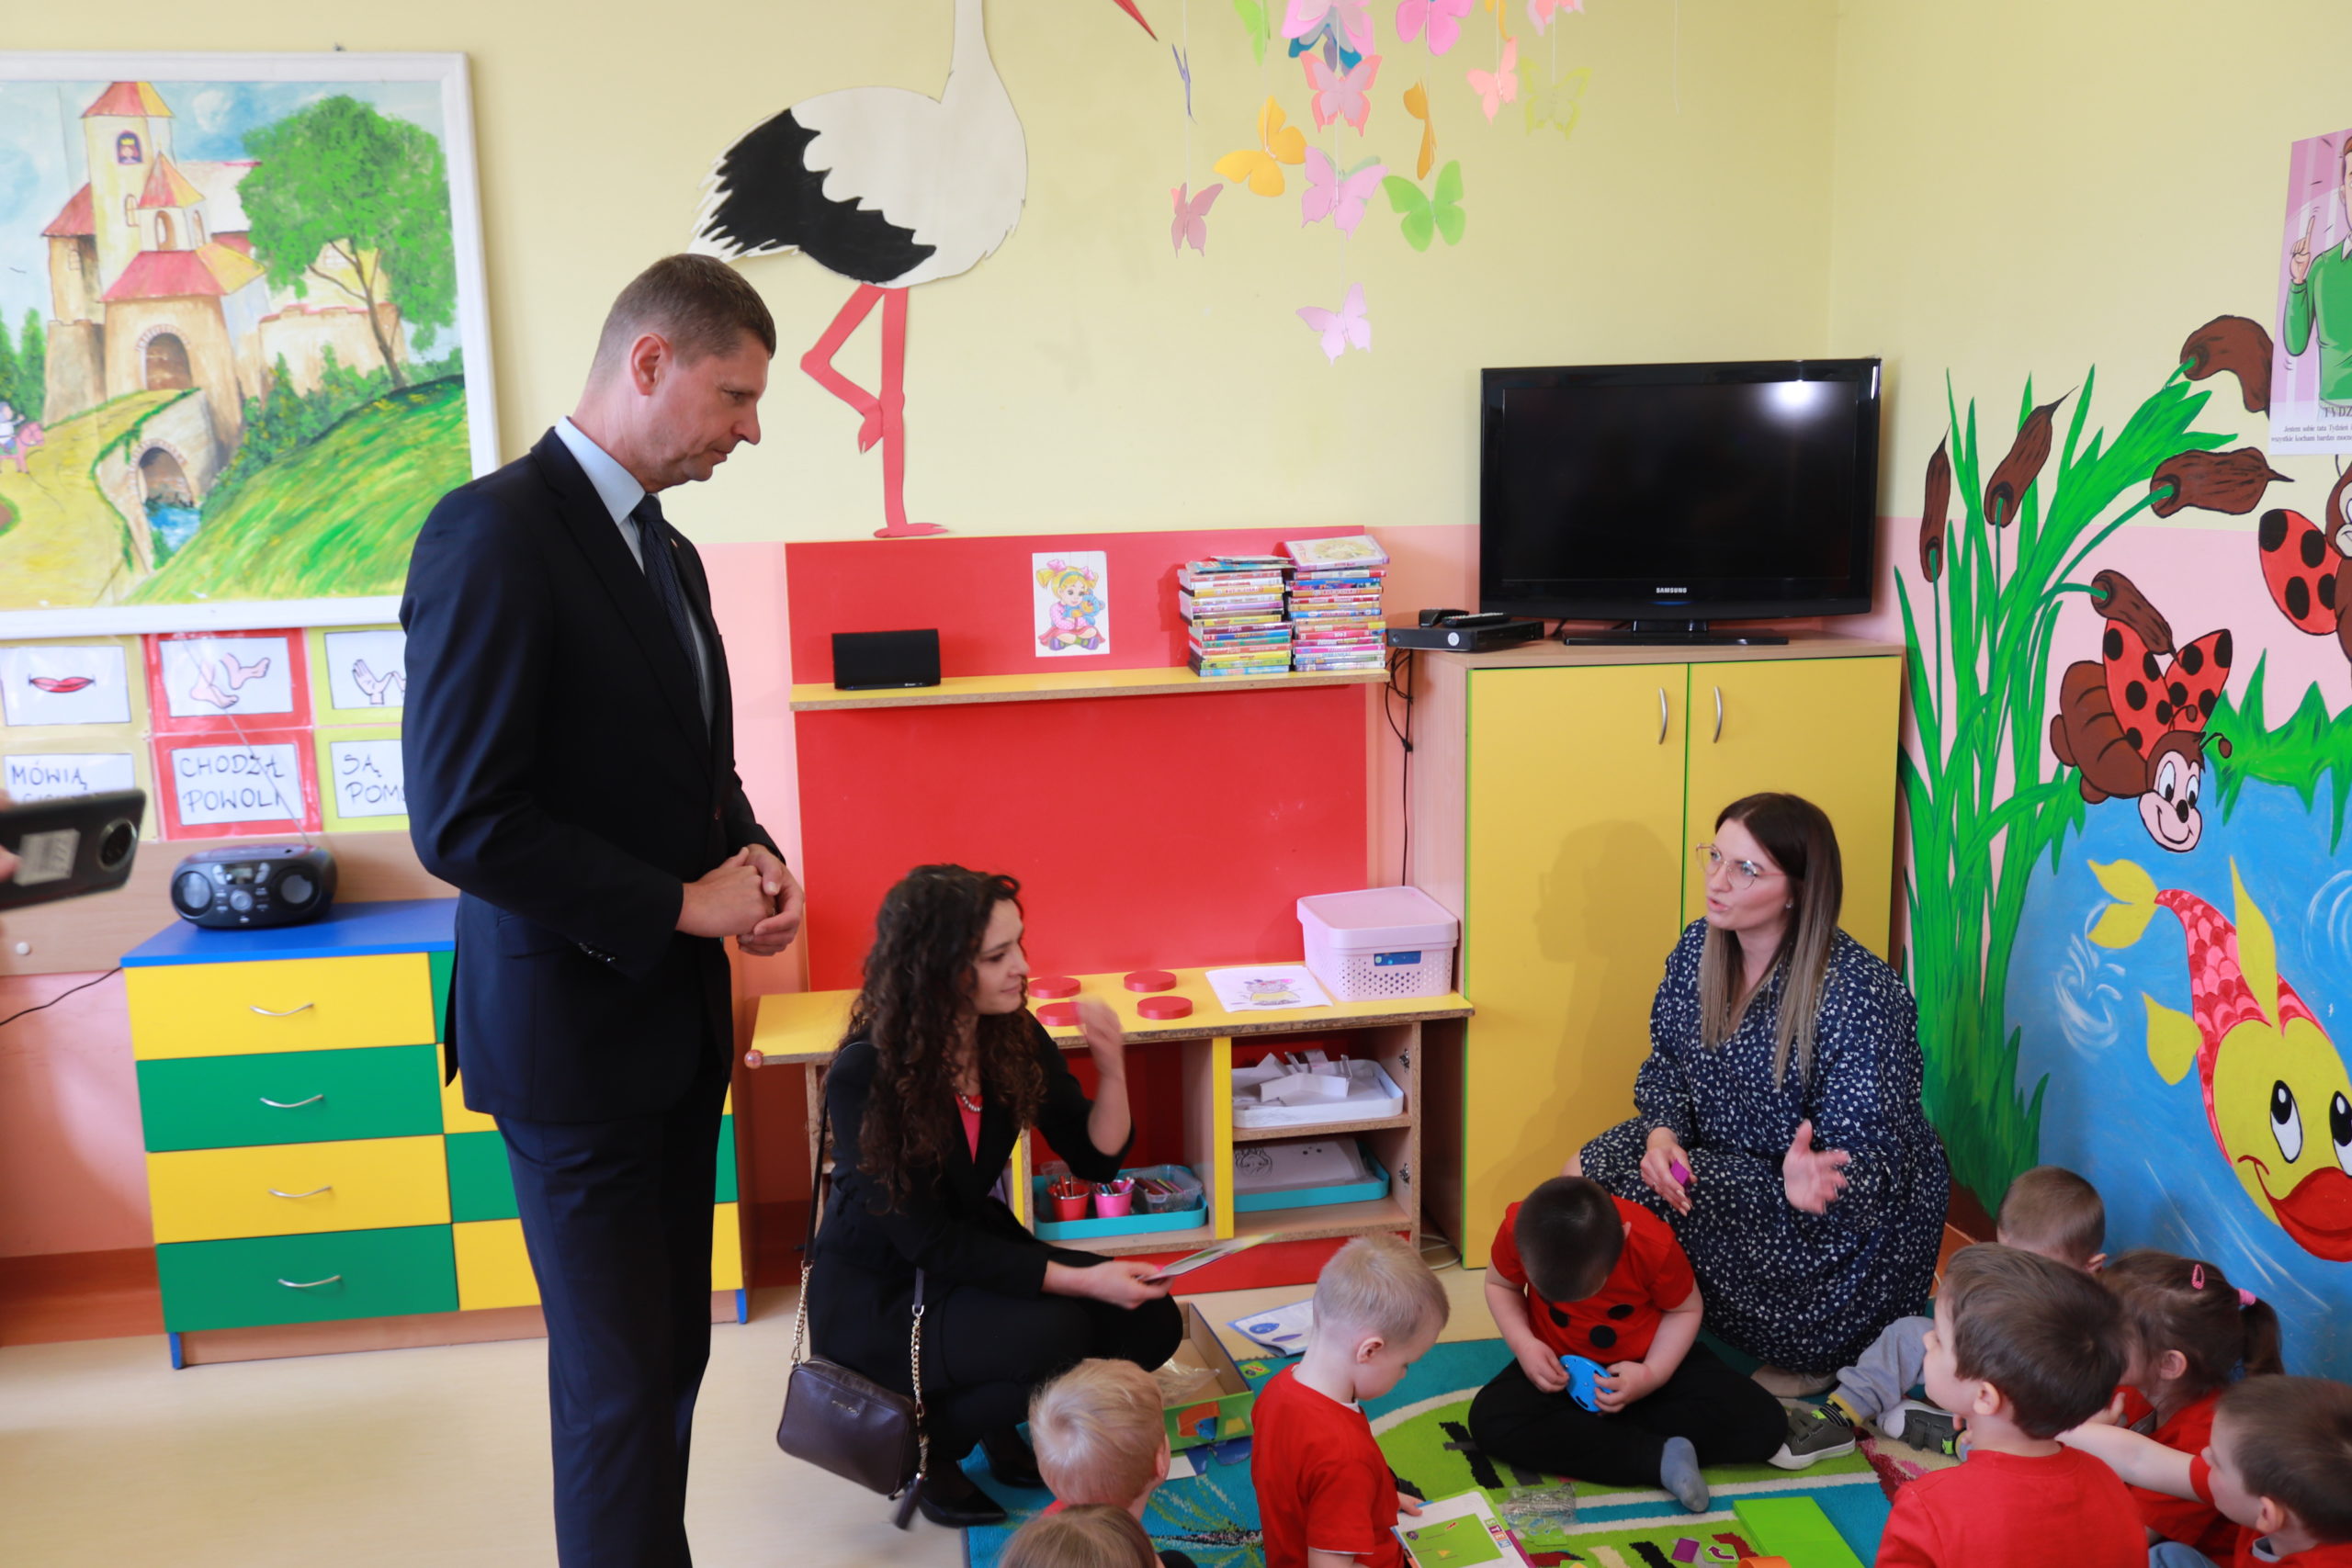 Na zdjęciu widoczny jest Wiceminister edukacji i nauki Dariusz Piontkowski wraz z nauczycielkami oraz dziećmi